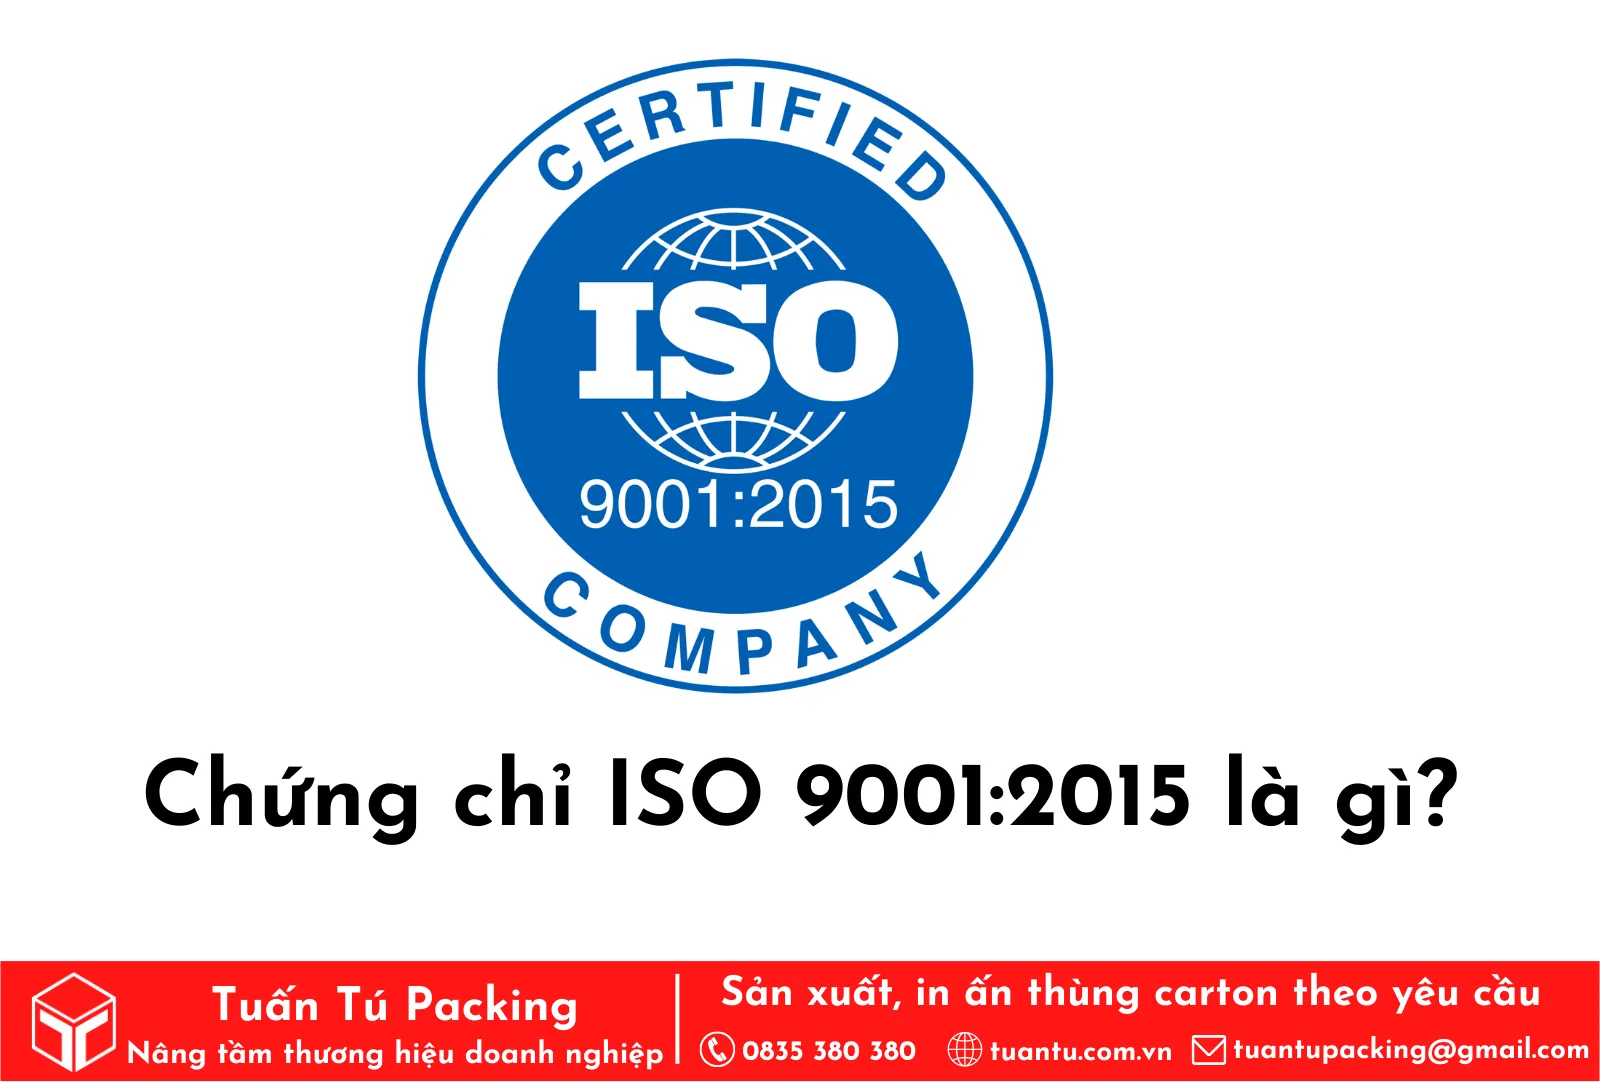 Chứng chỉ ISO 9001:2015 là gì?